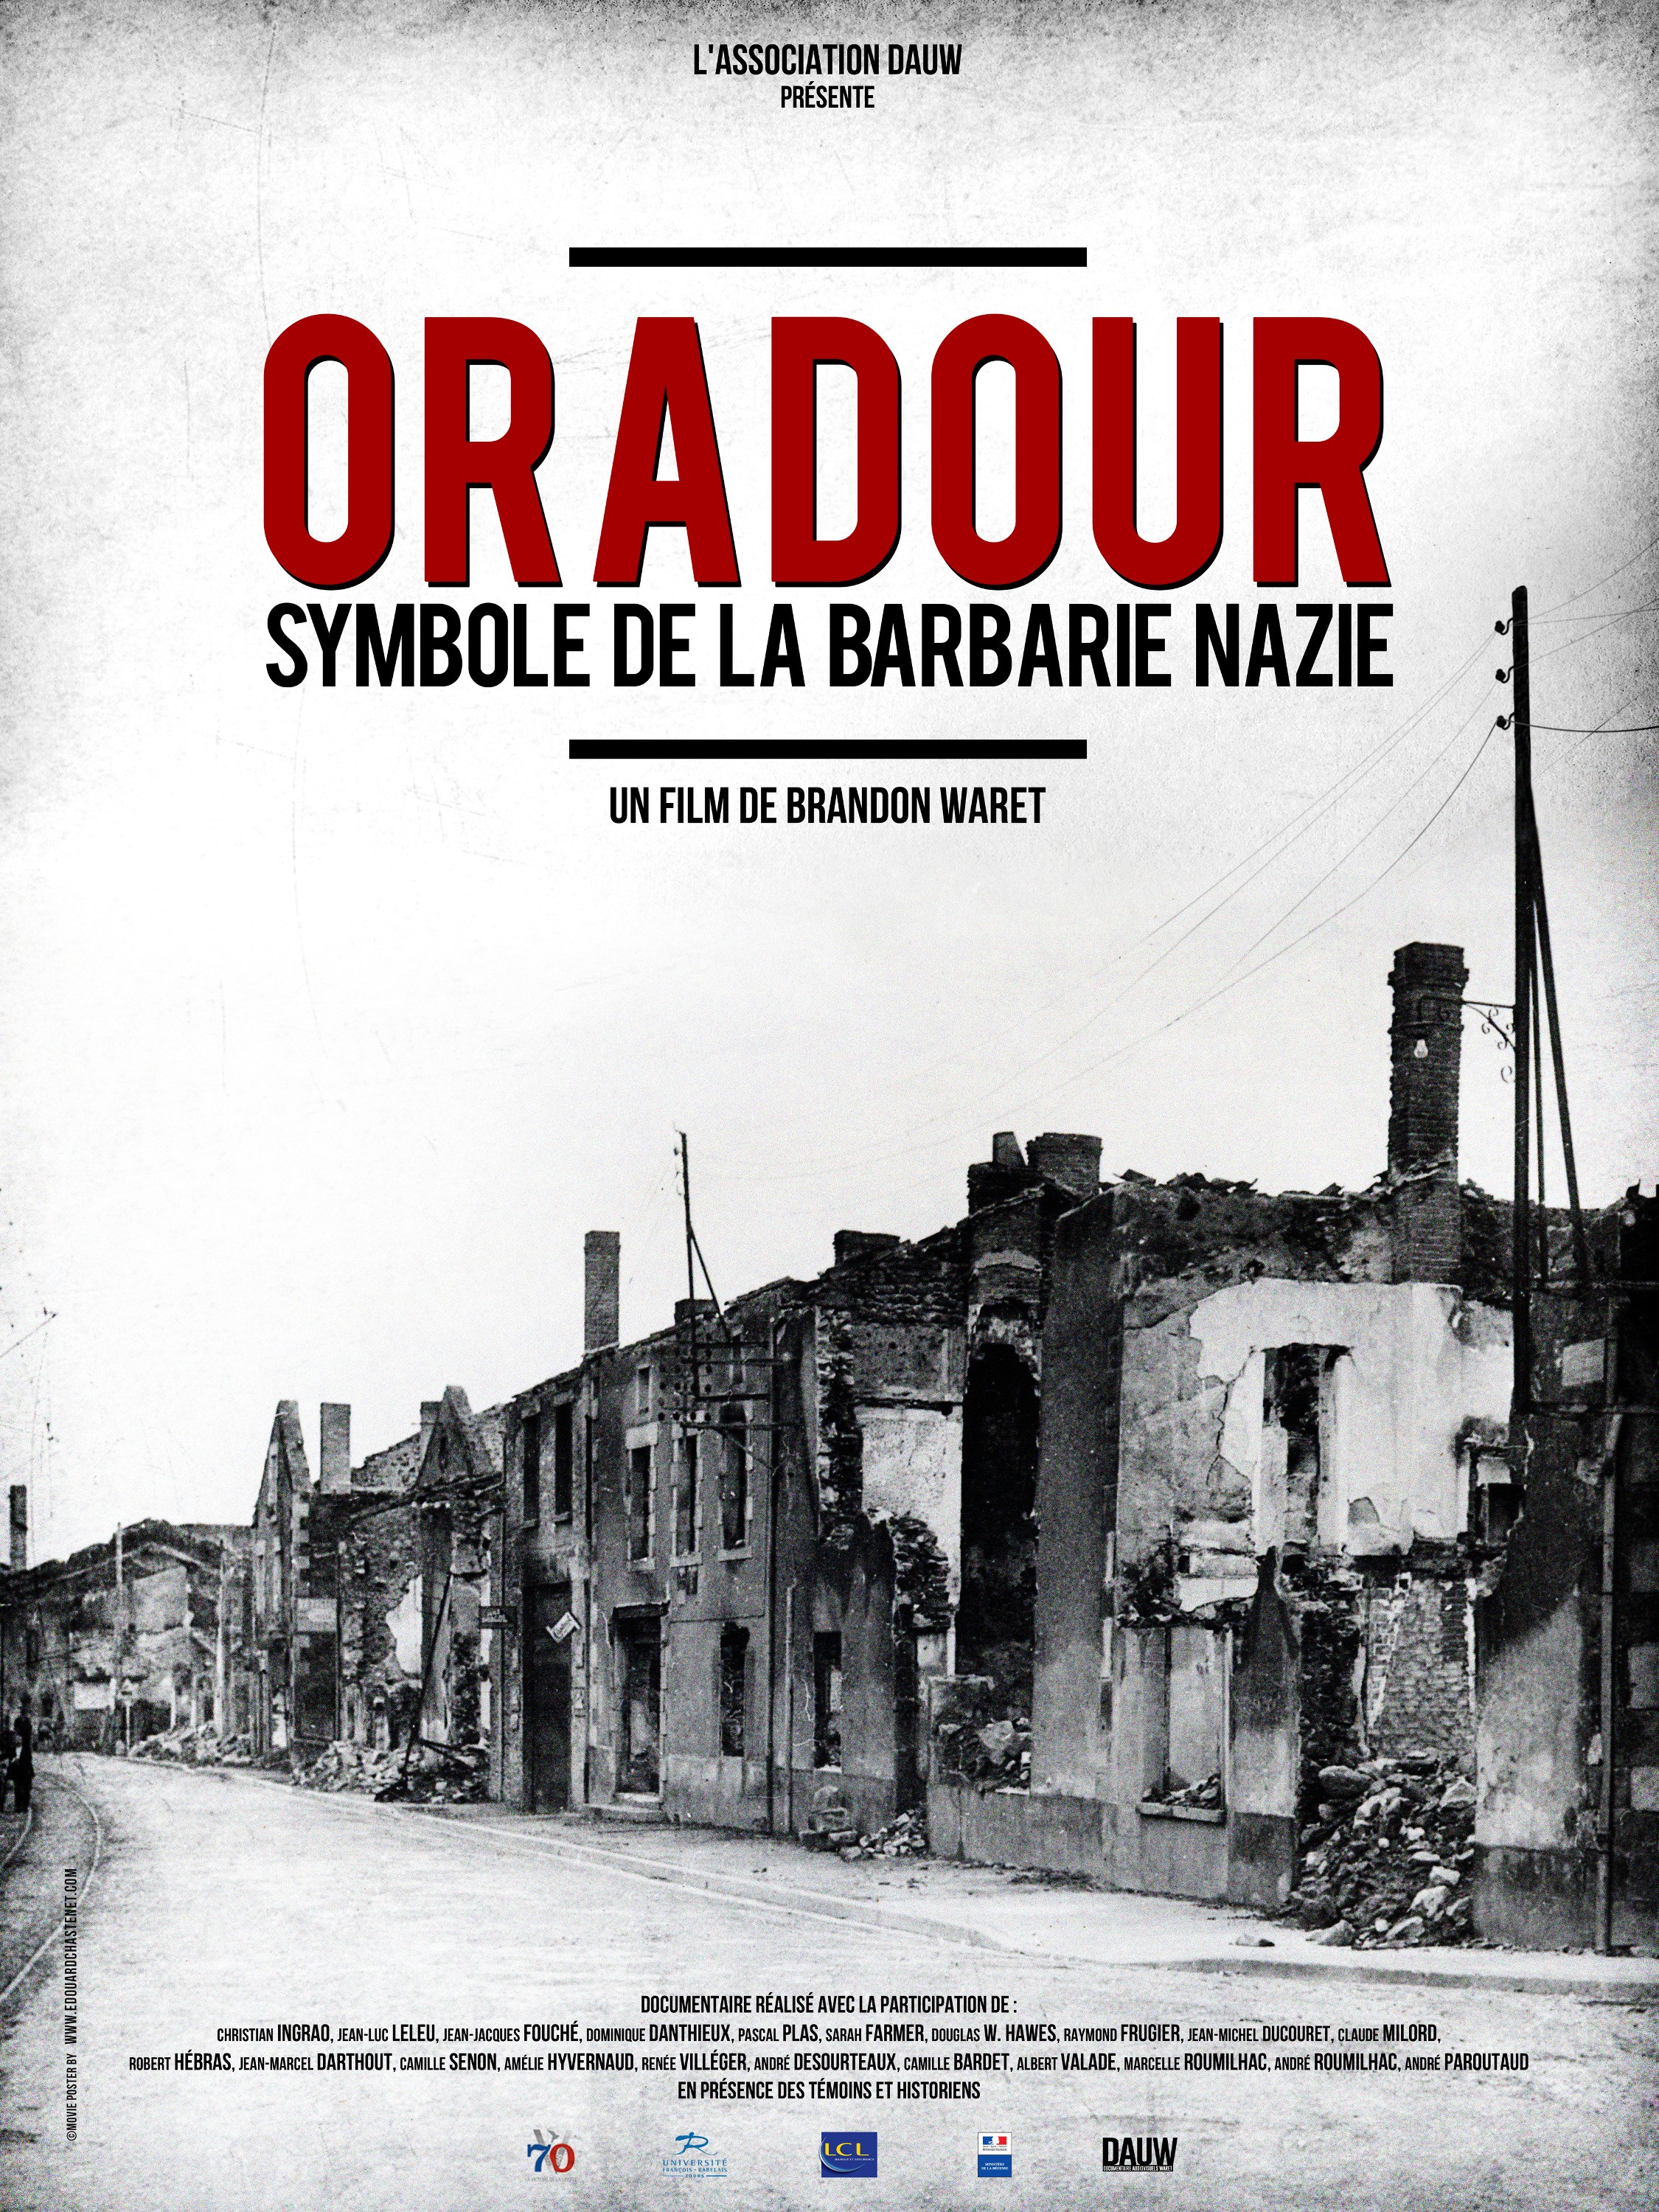 Mega Sized Movie Poster Image for Oradour 